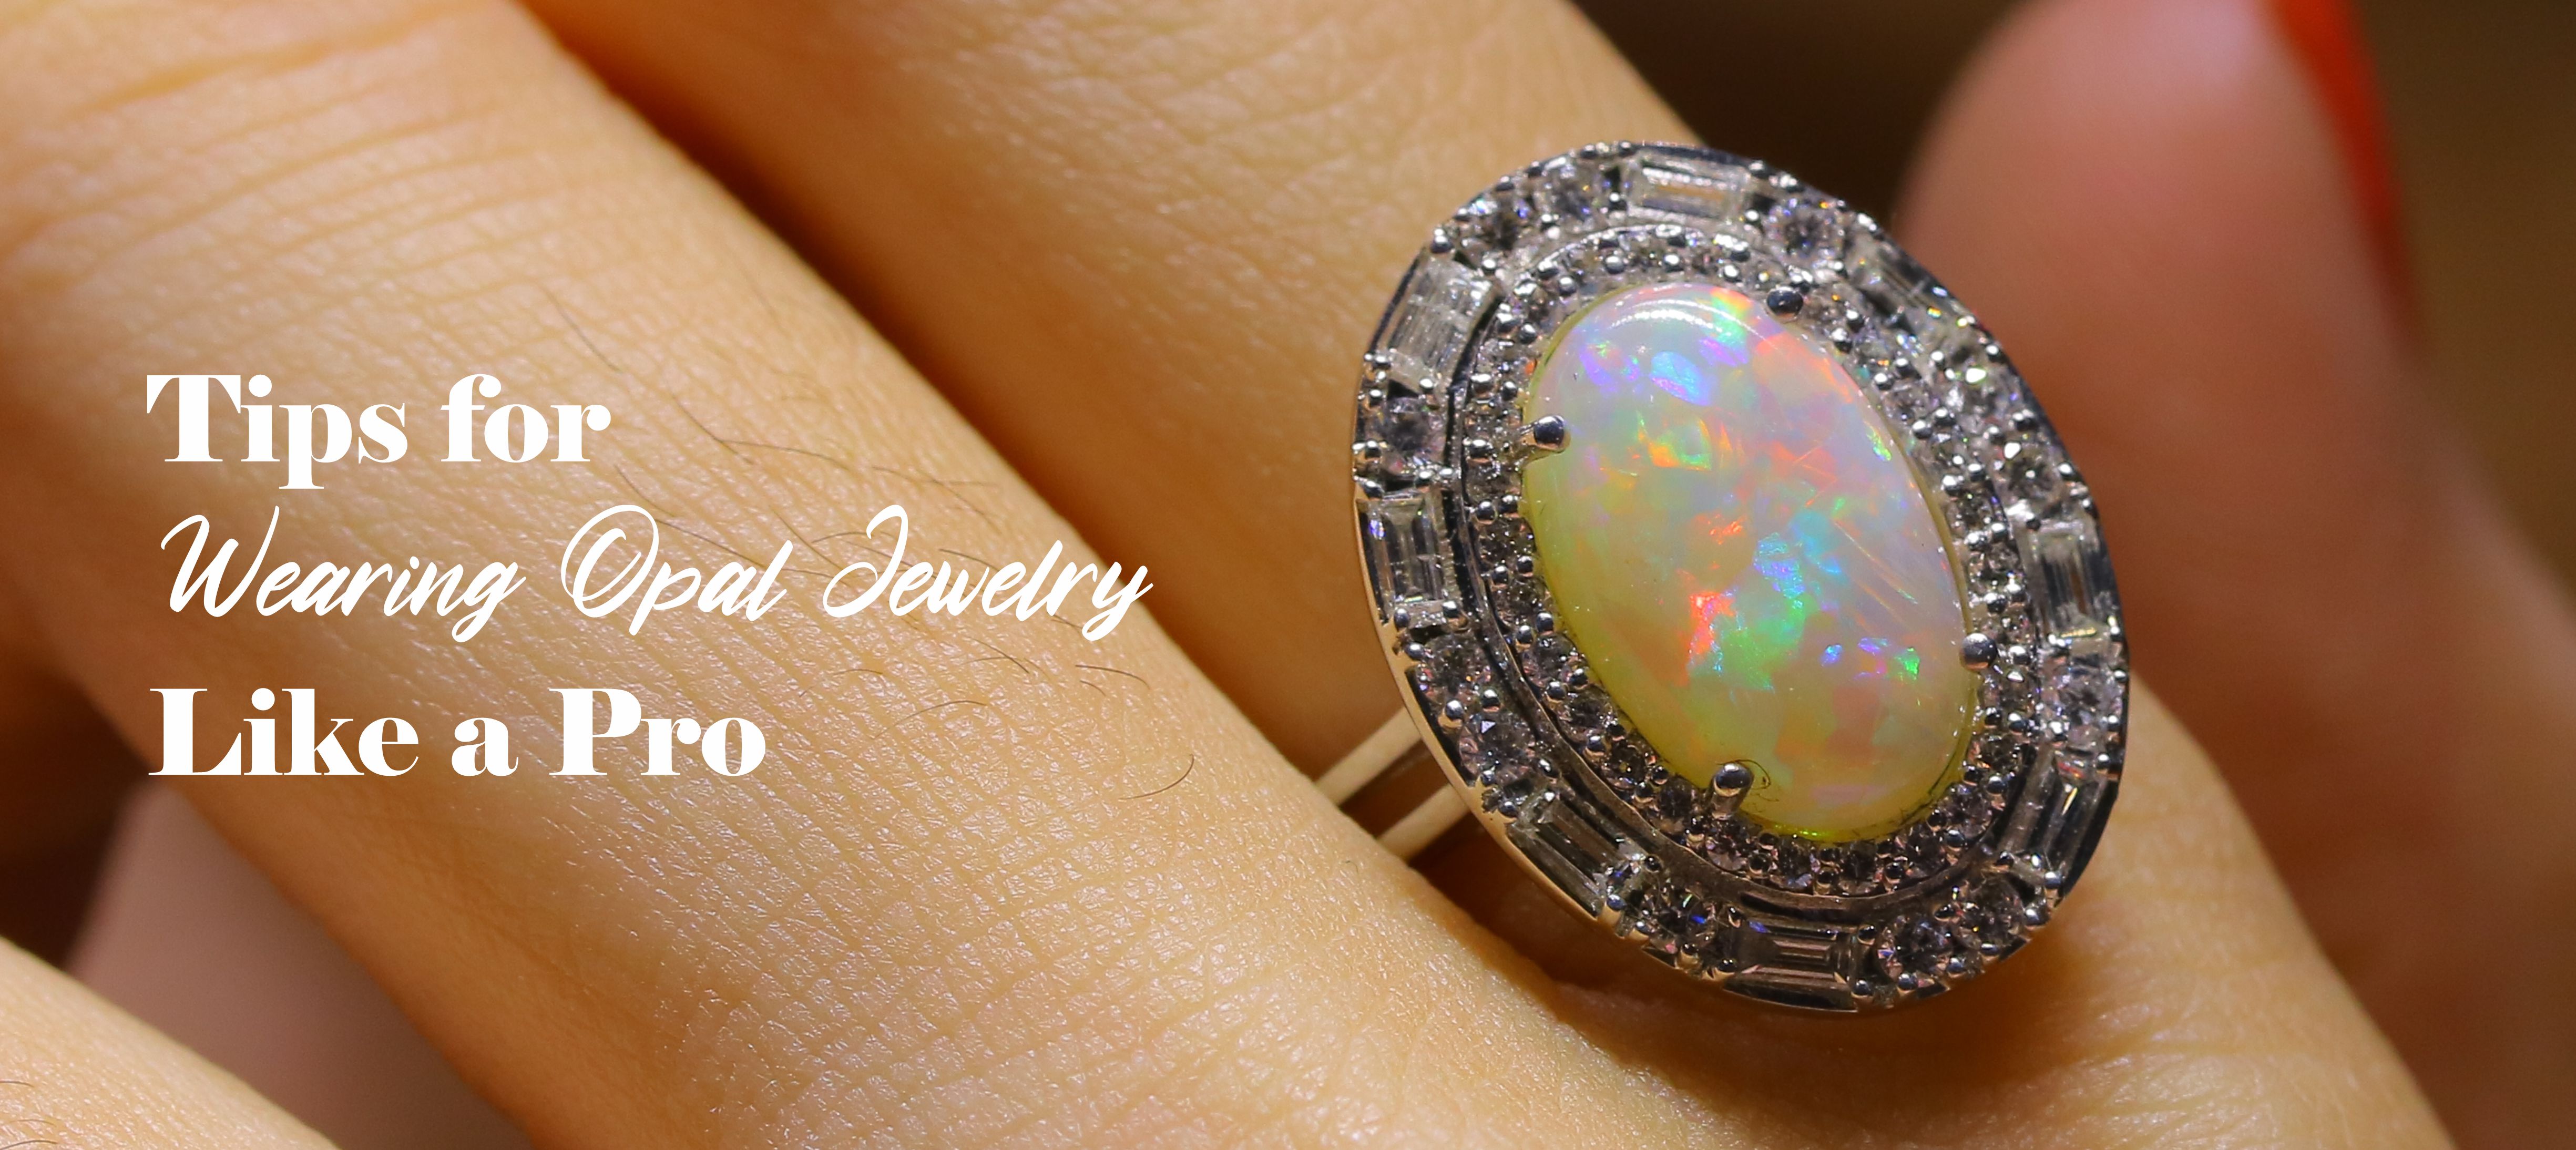 tips-for-wearing-opal-jewelry-like-a-pro-1.jpg